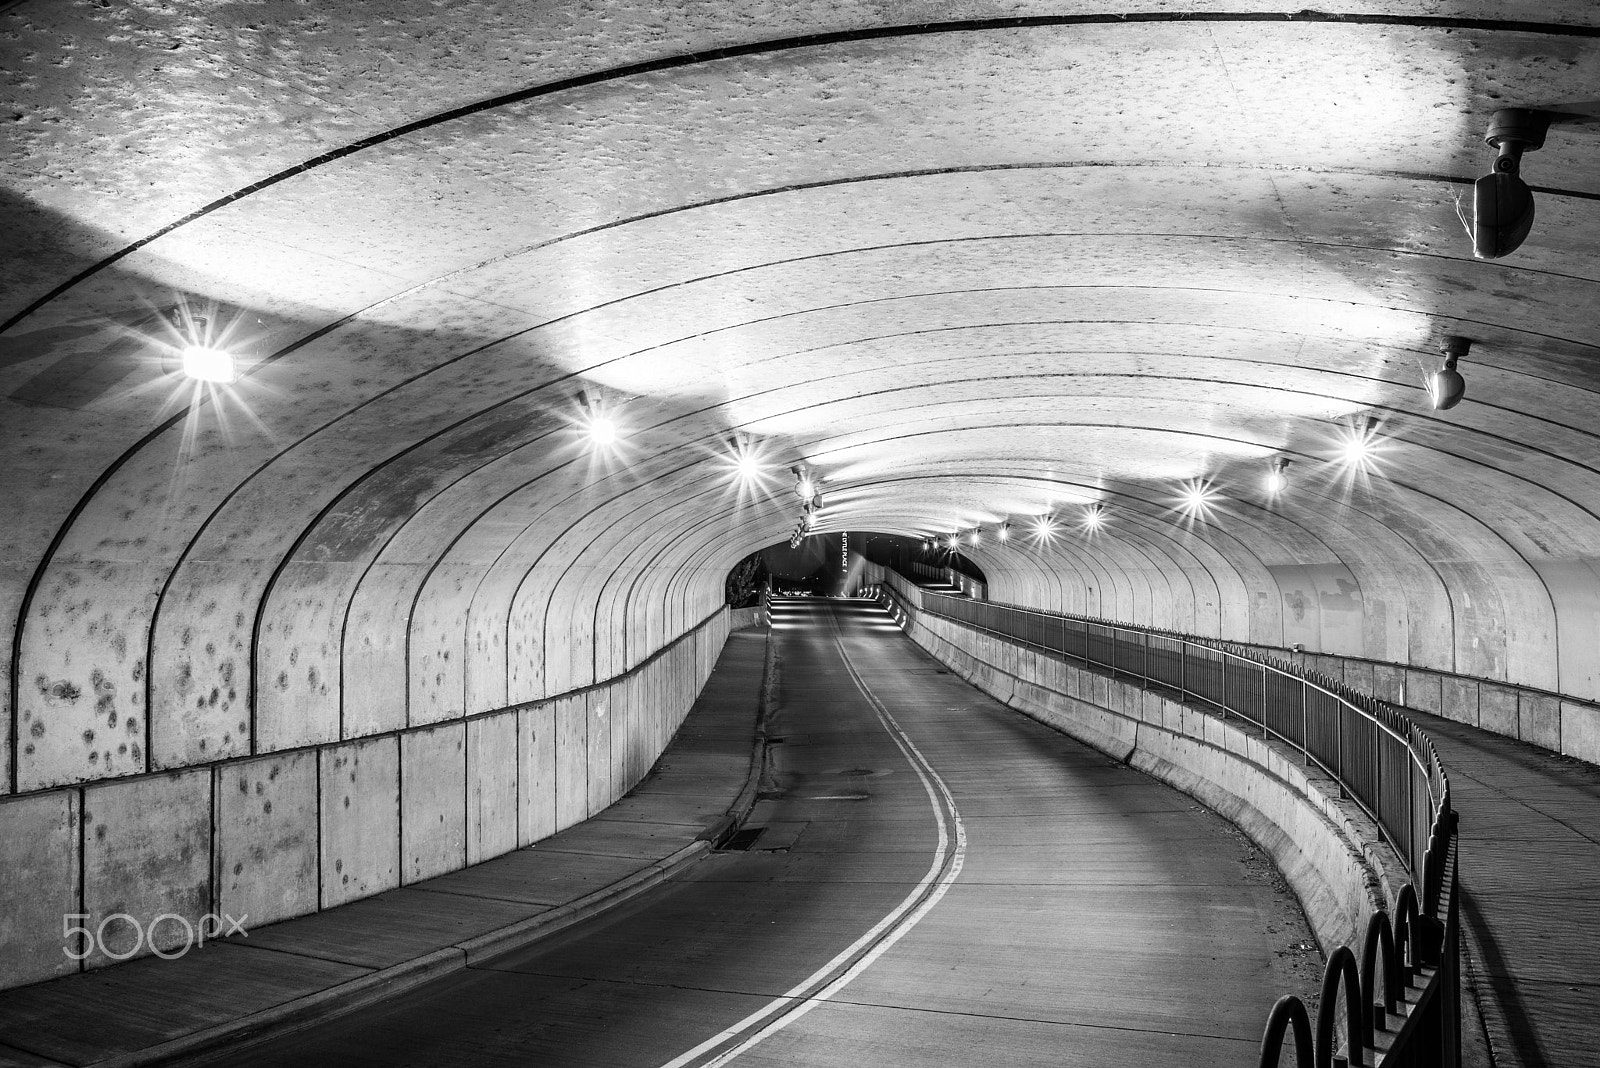 AF Nikkor 28mm f/2.8 sample photo. Tunnel photography